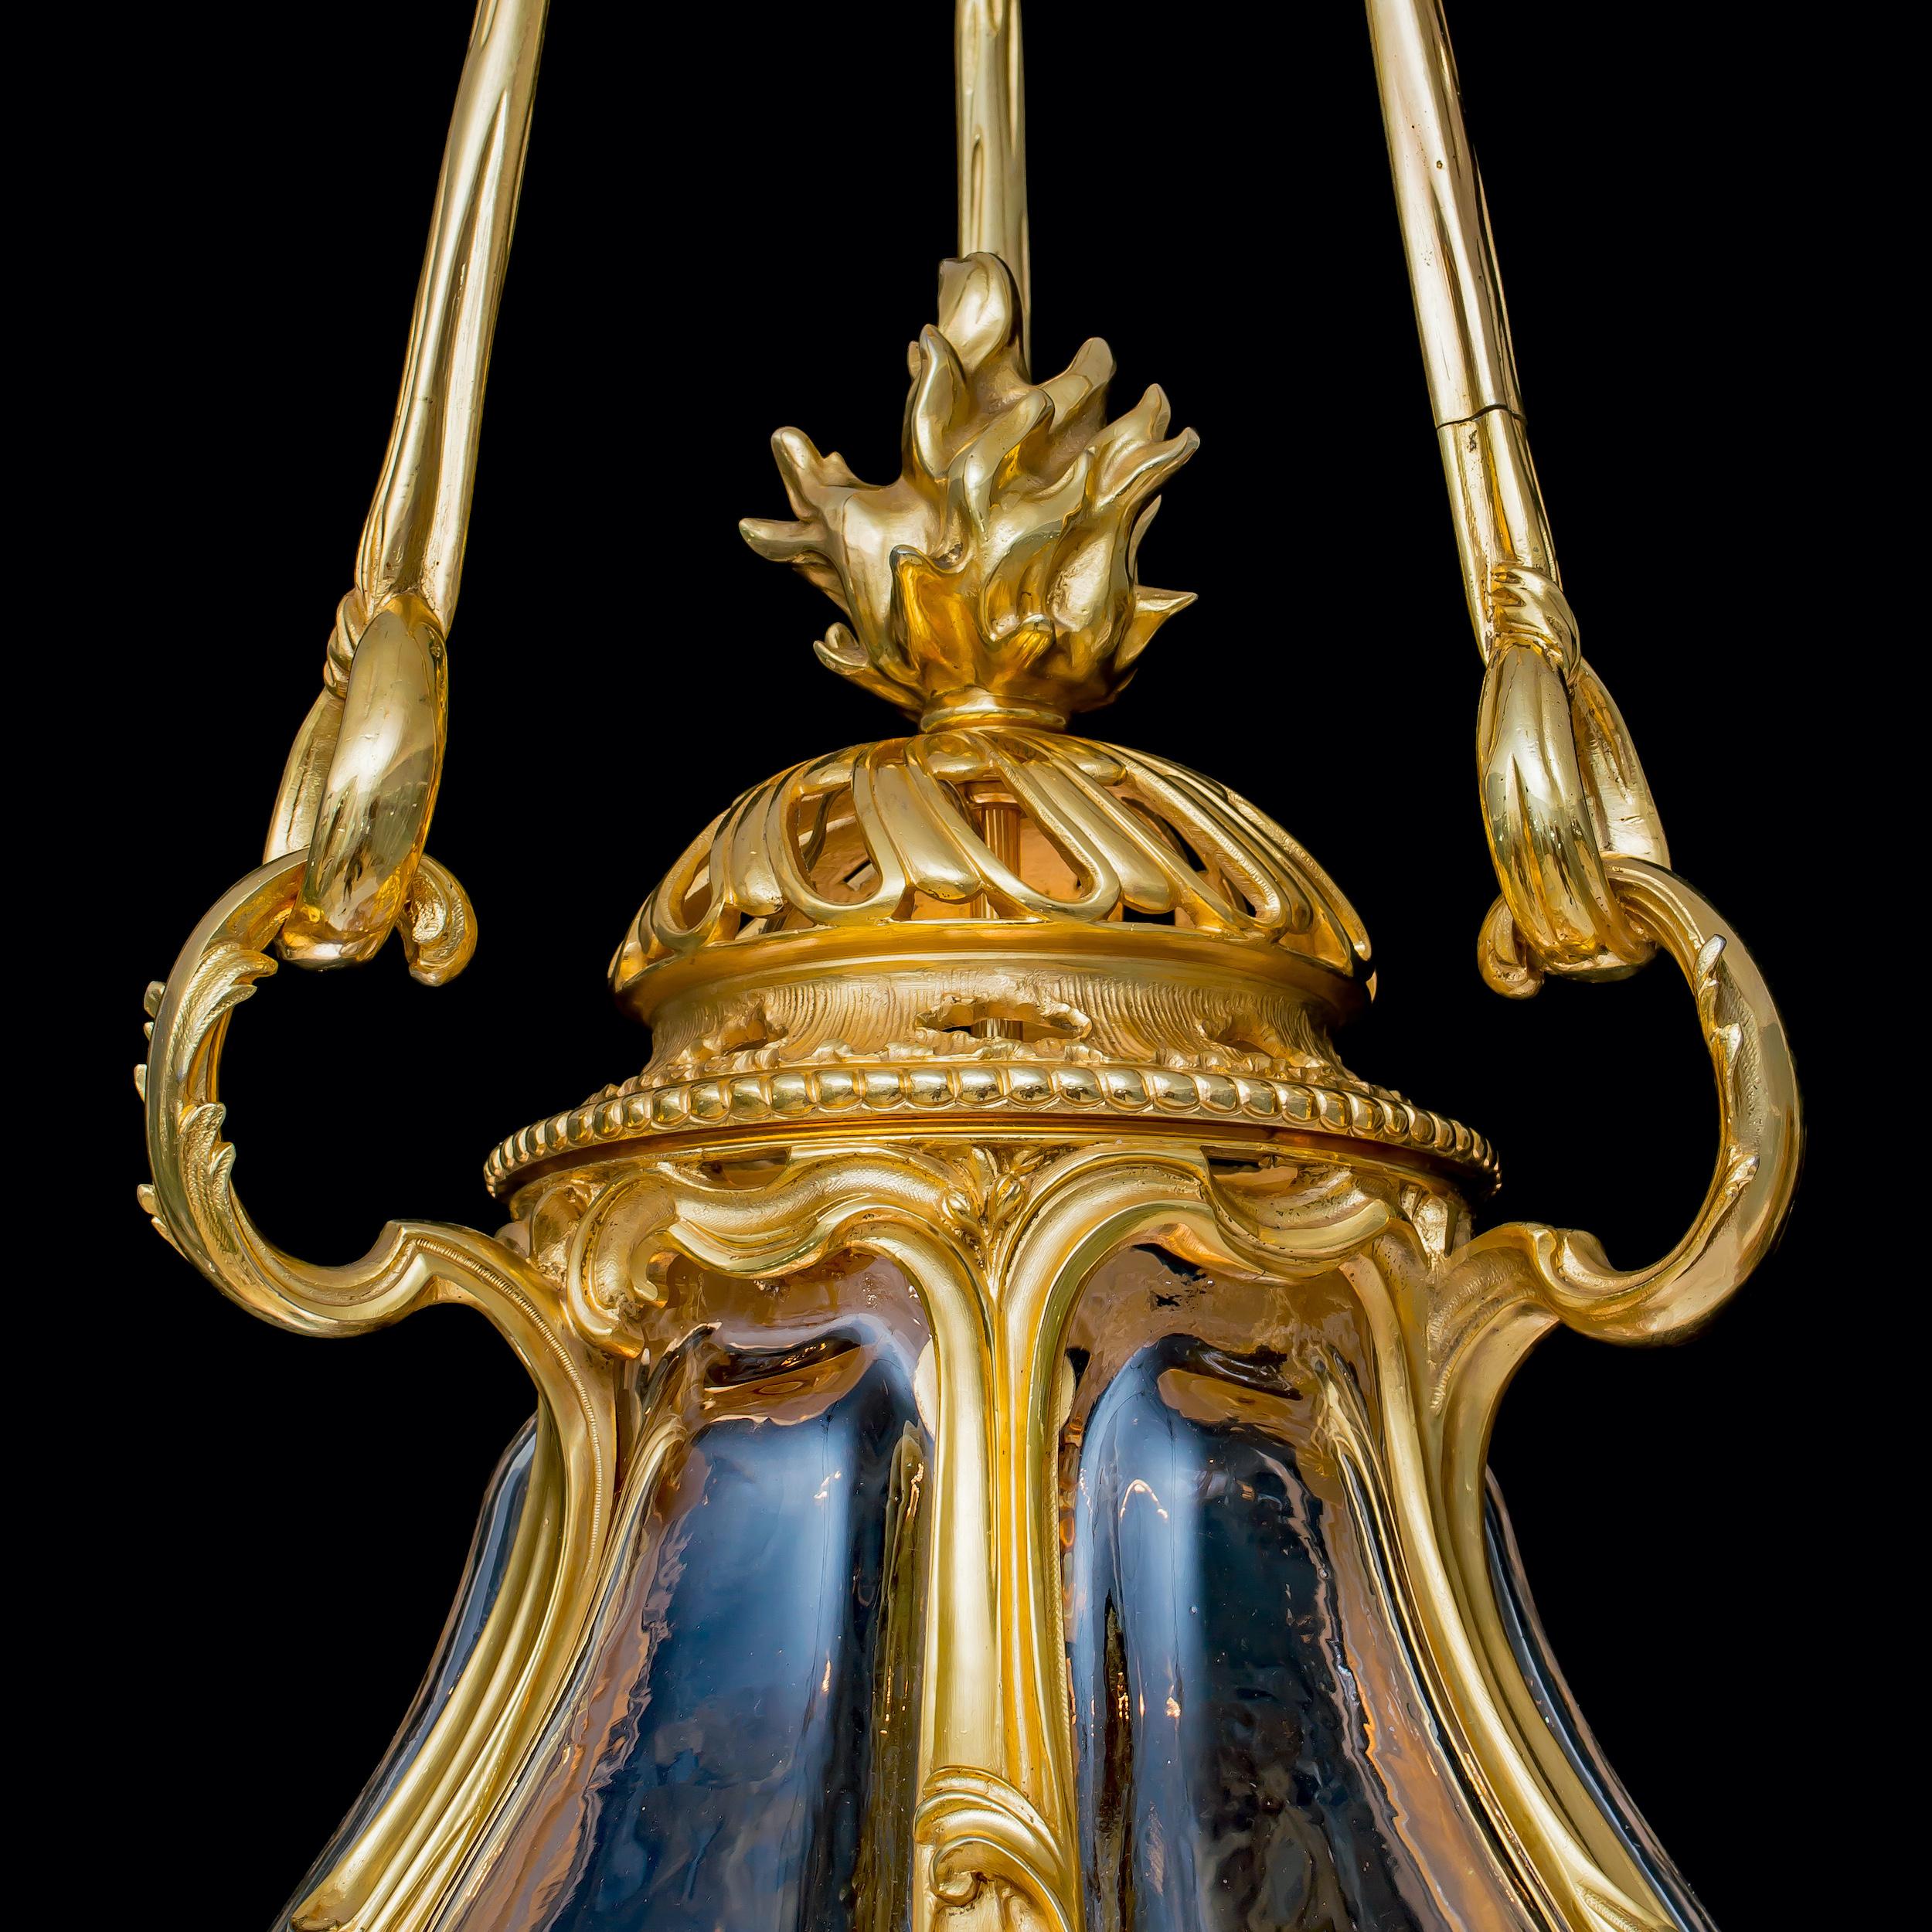 Eine wichtige Laterne
Im Stil von Ludwig XV

Aus vergoldeter Bronze gefertigt, besteht der eiförmige Körper aus sechs mundgeblasenen Kristallfacetten, die mit Akanthusblättern aus Ormolu durchsetzt sind. Das untere und obere Register ist mit